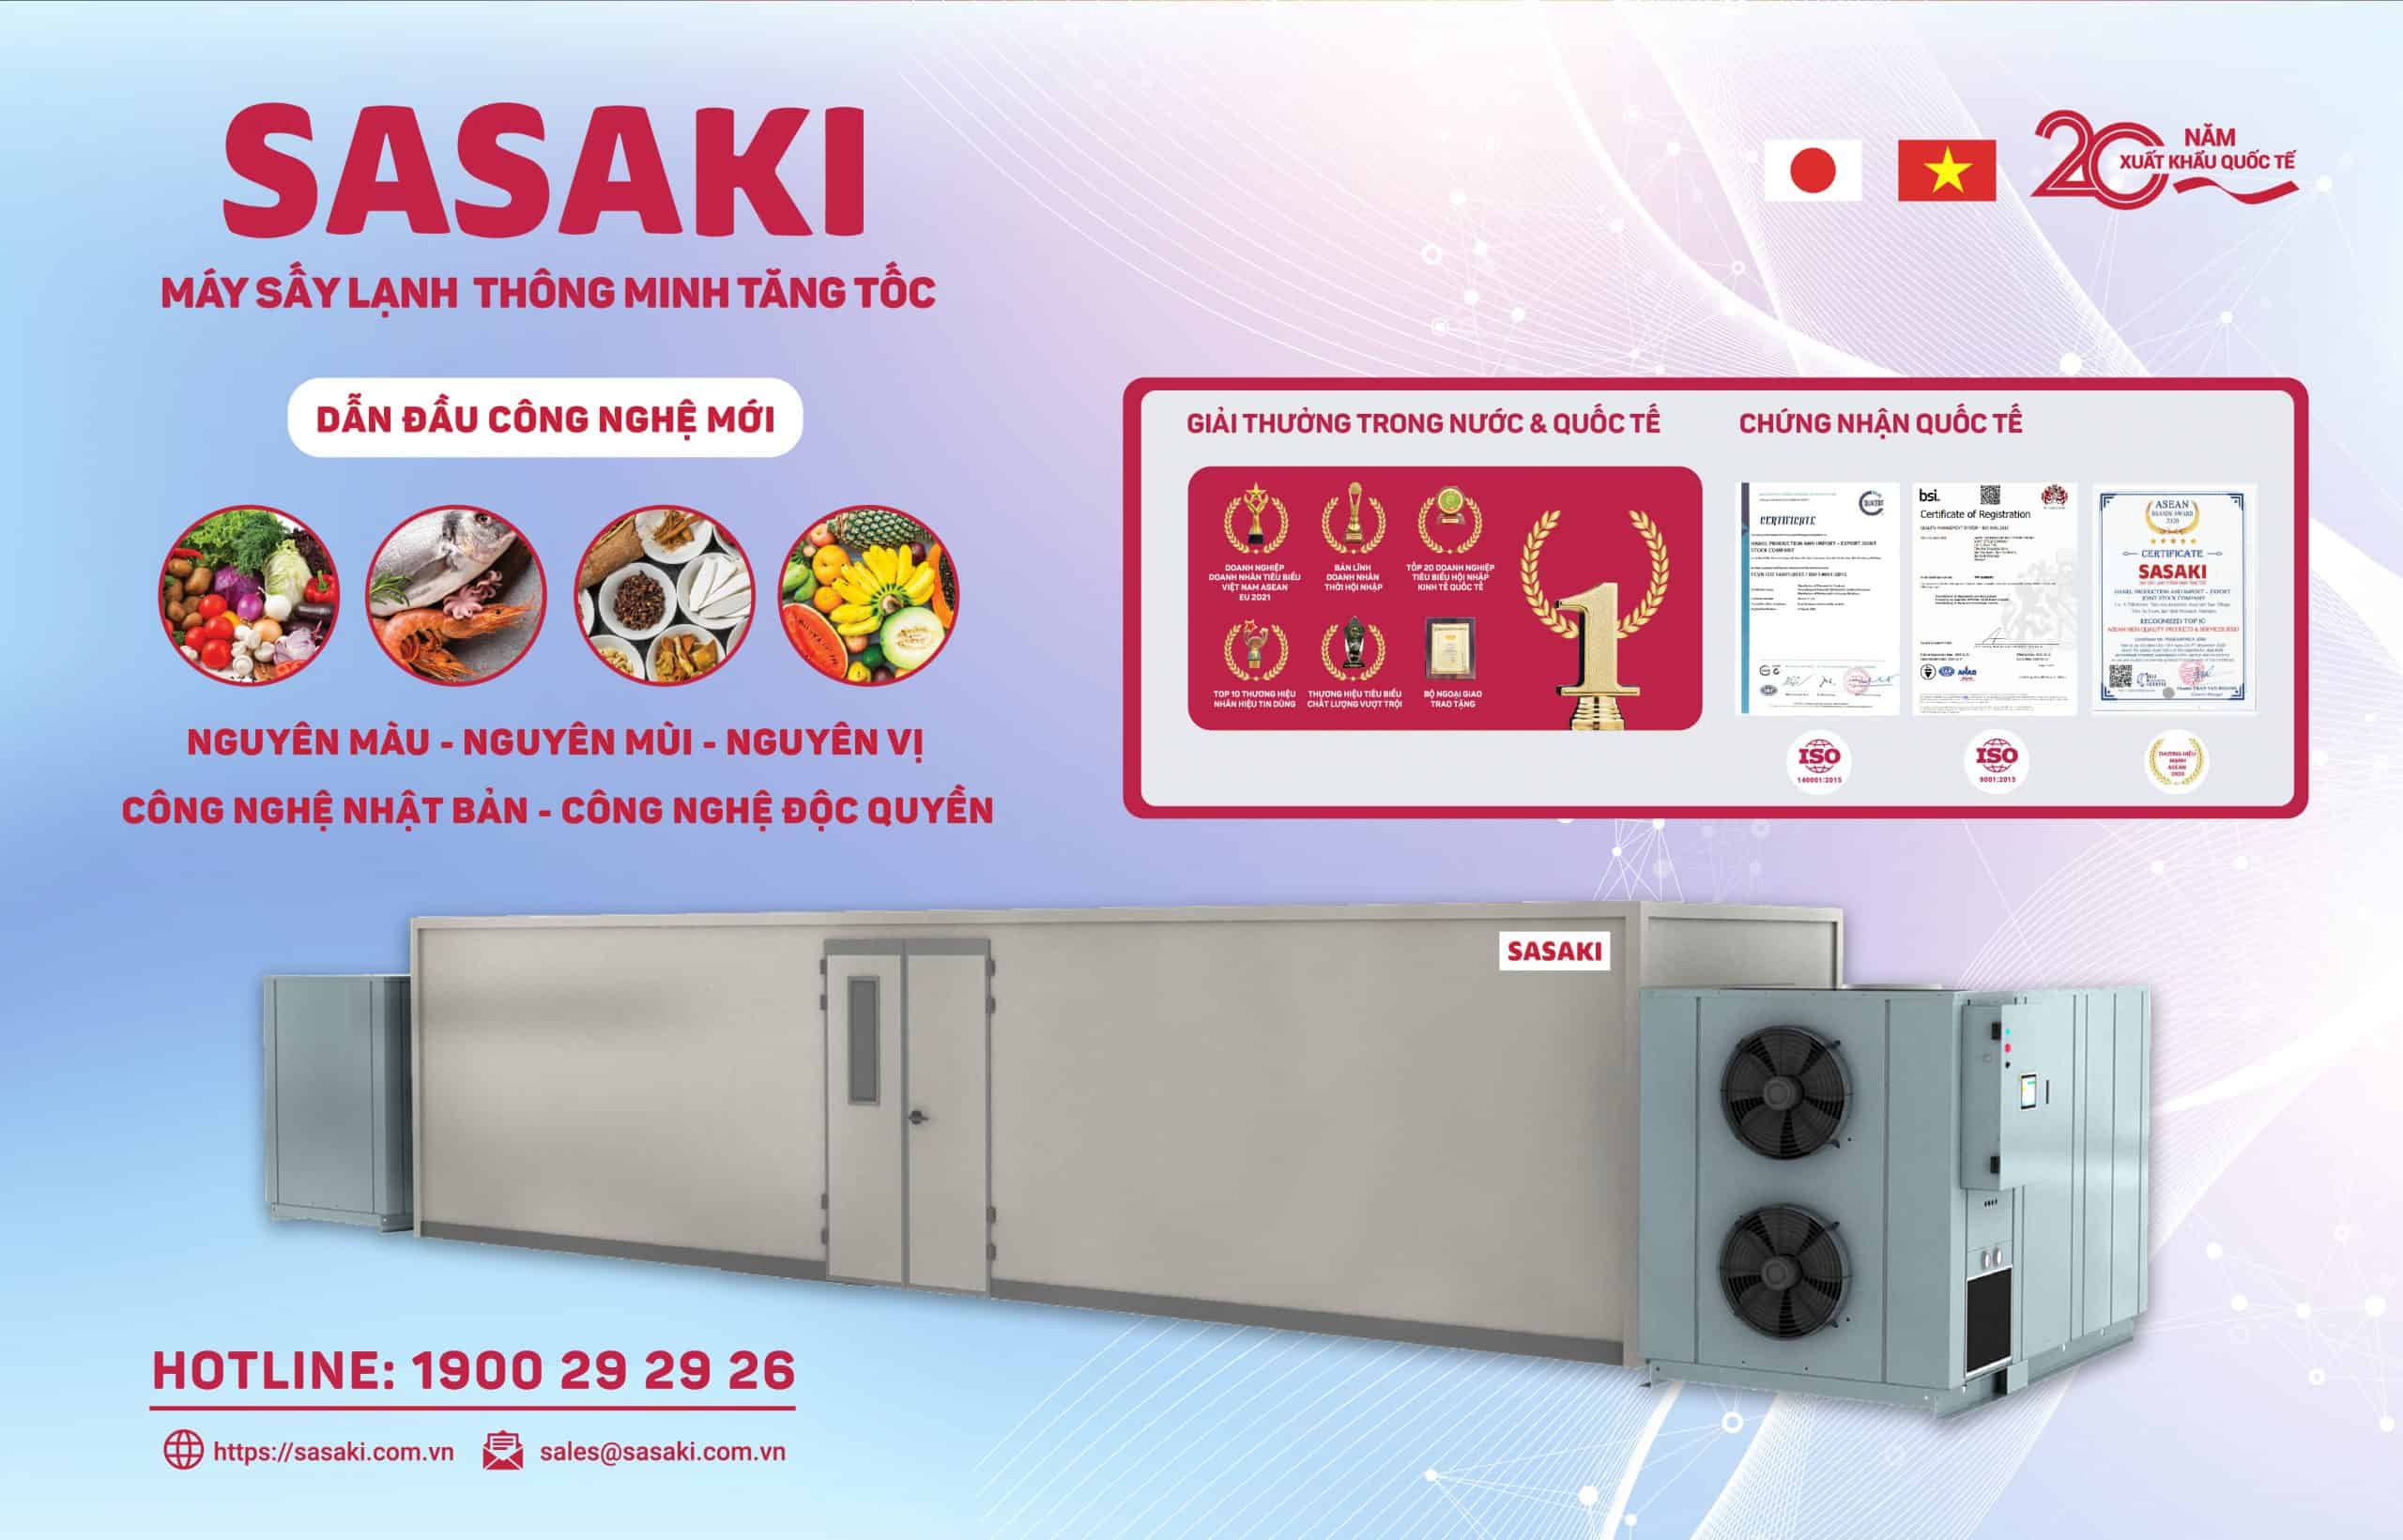 Máy sấy khô gà công nghiệp SASAKI mang tốc độ sấy nhanh chóng